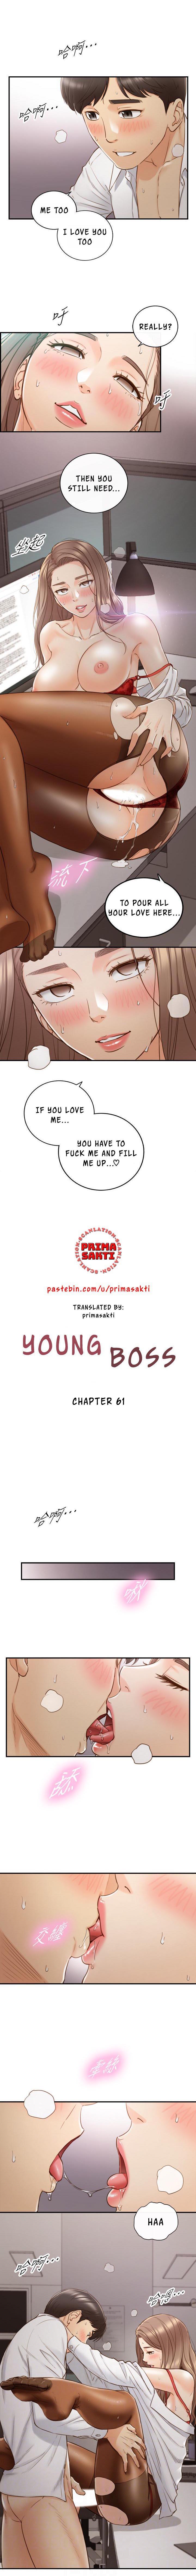 Young Boss Manhwa 01-73 482